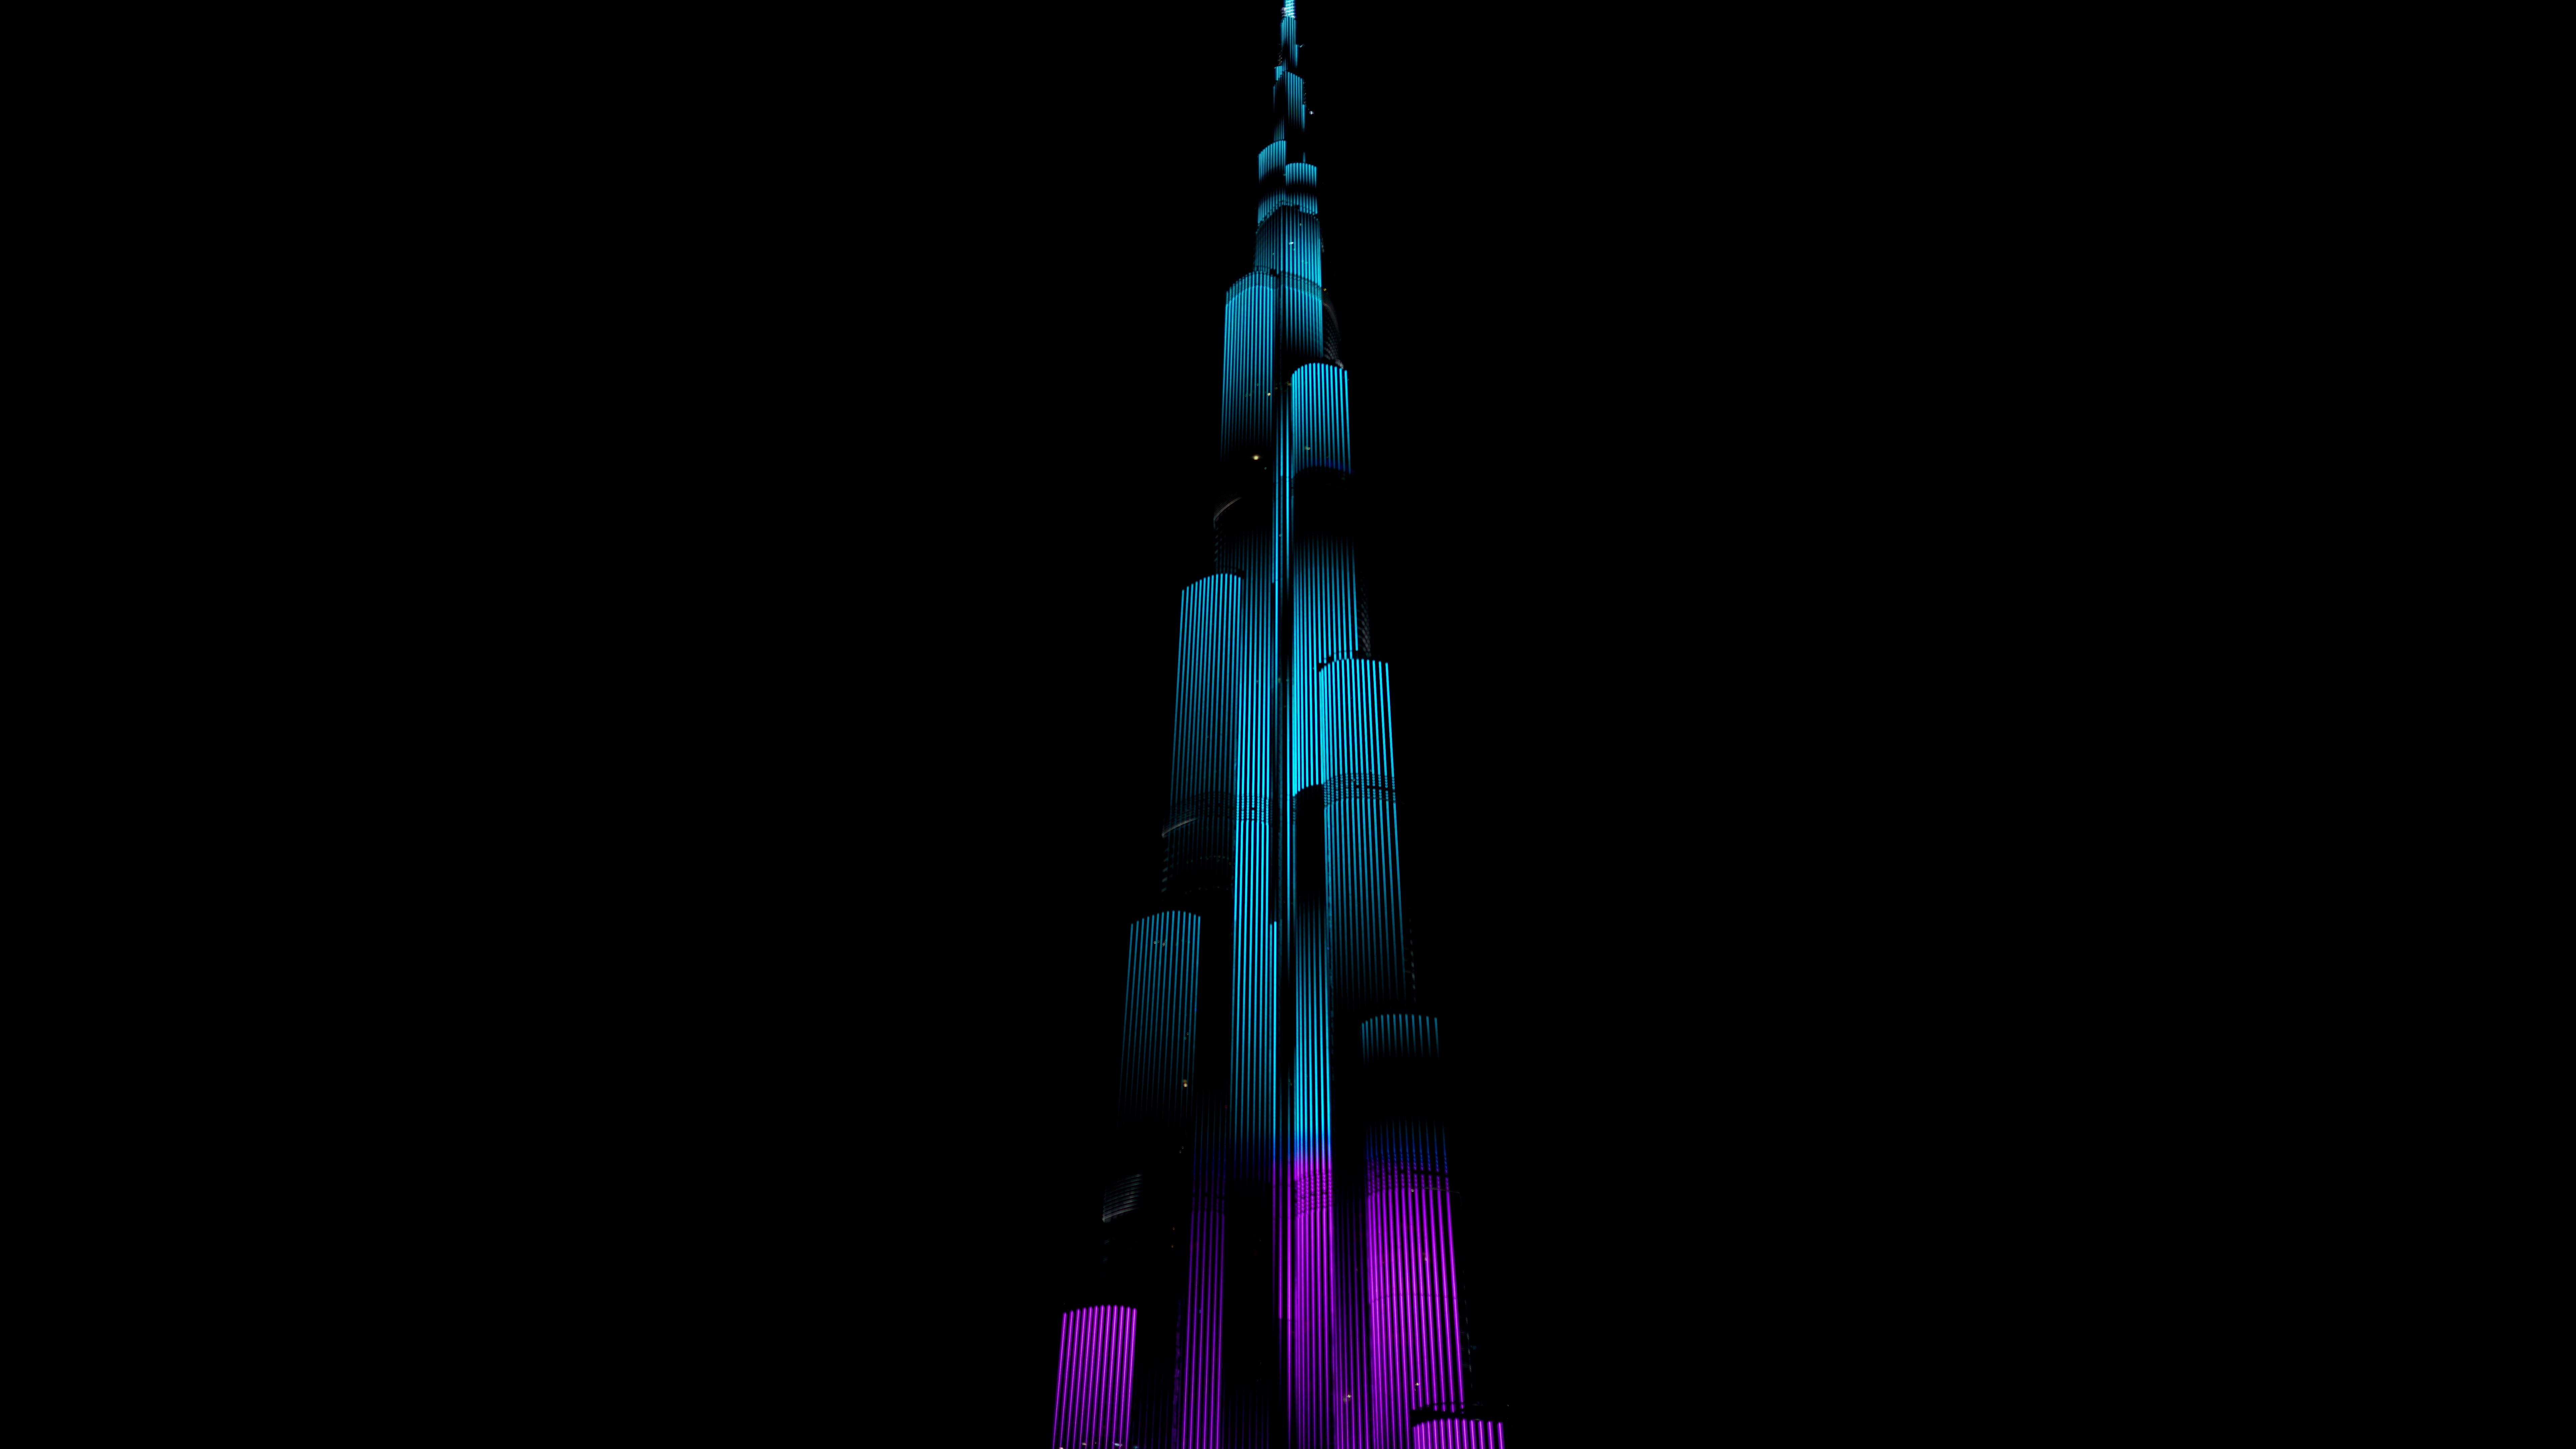 Burj Khalifa Wallpaper 4K, Night illumination, Black/Dark, #3279